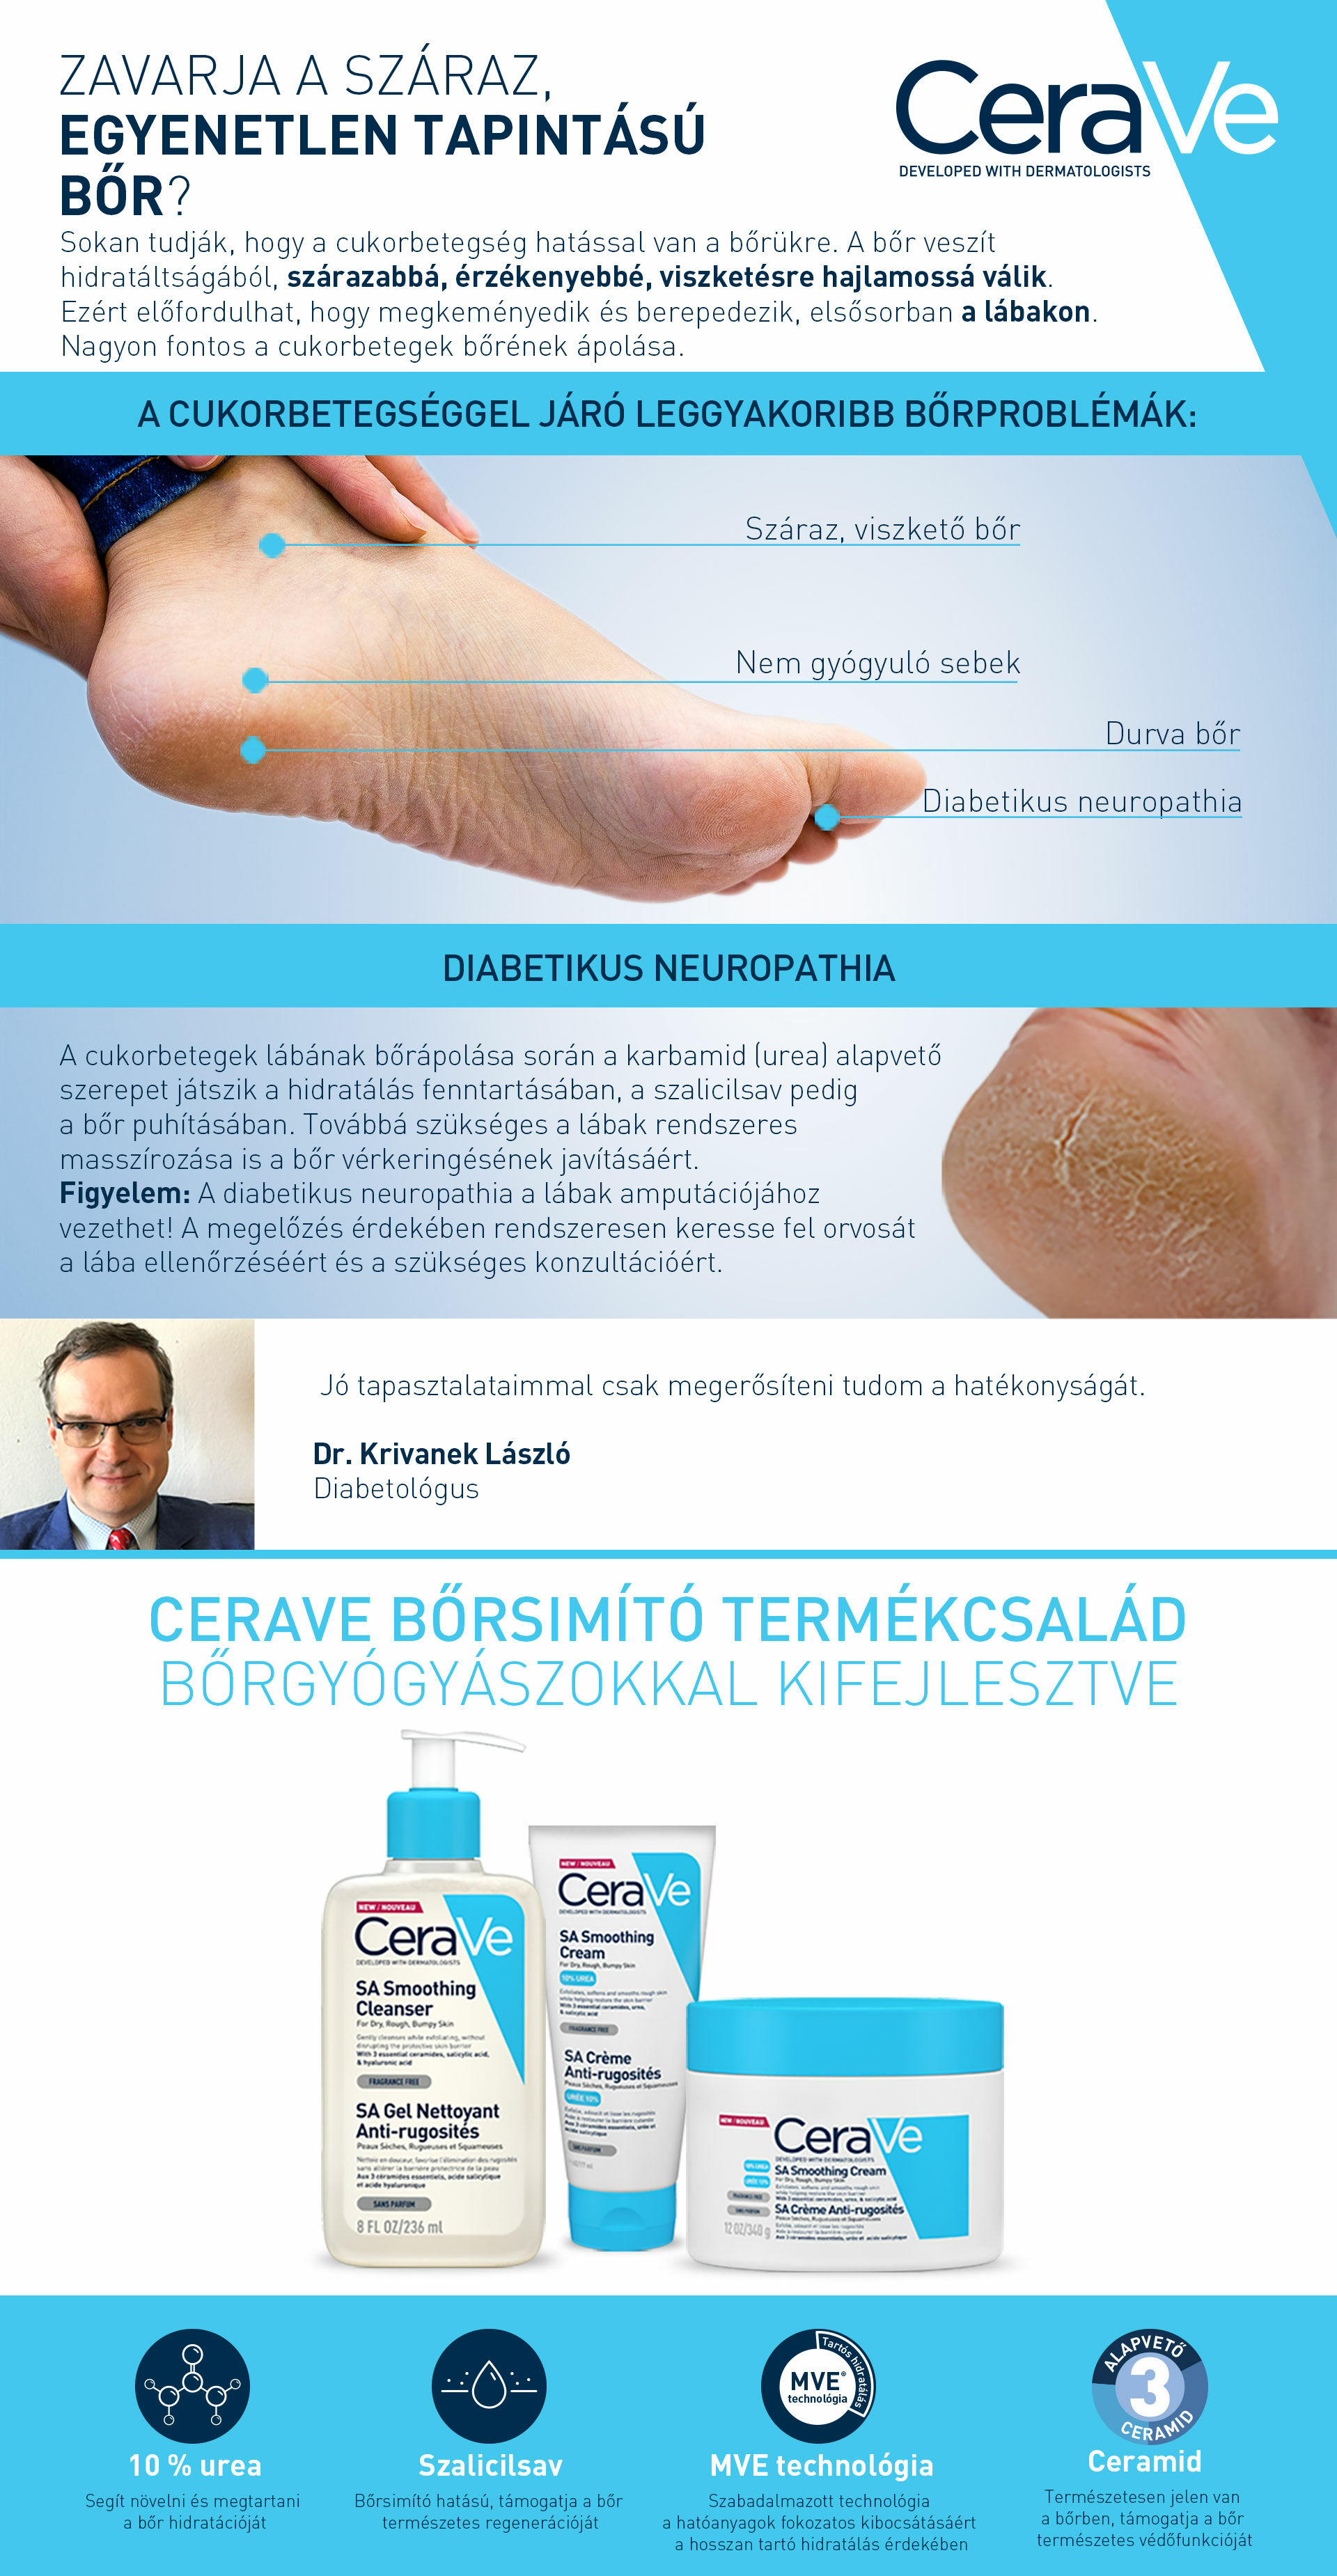 CeraVe SA termékeket javasoljuk diabetikus neuropathia esetén!